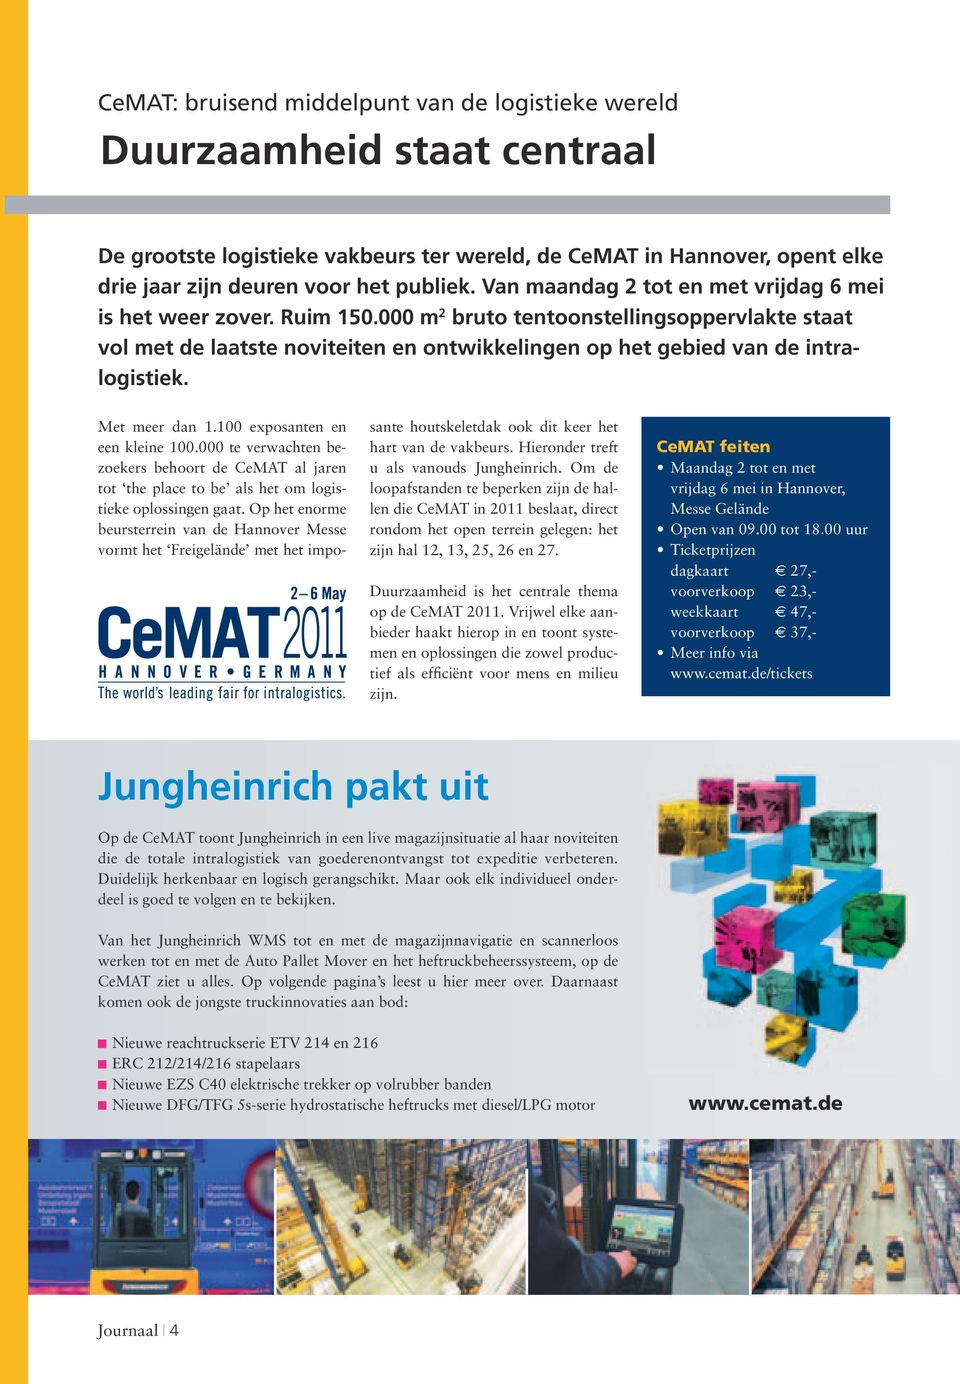 Met meer dan 1.100 exposanten en een kleine 100.000 te verwachten bezoekers behoort de CeMAT al jaren tot the place to be als het om logistieke oplossingen gaat.